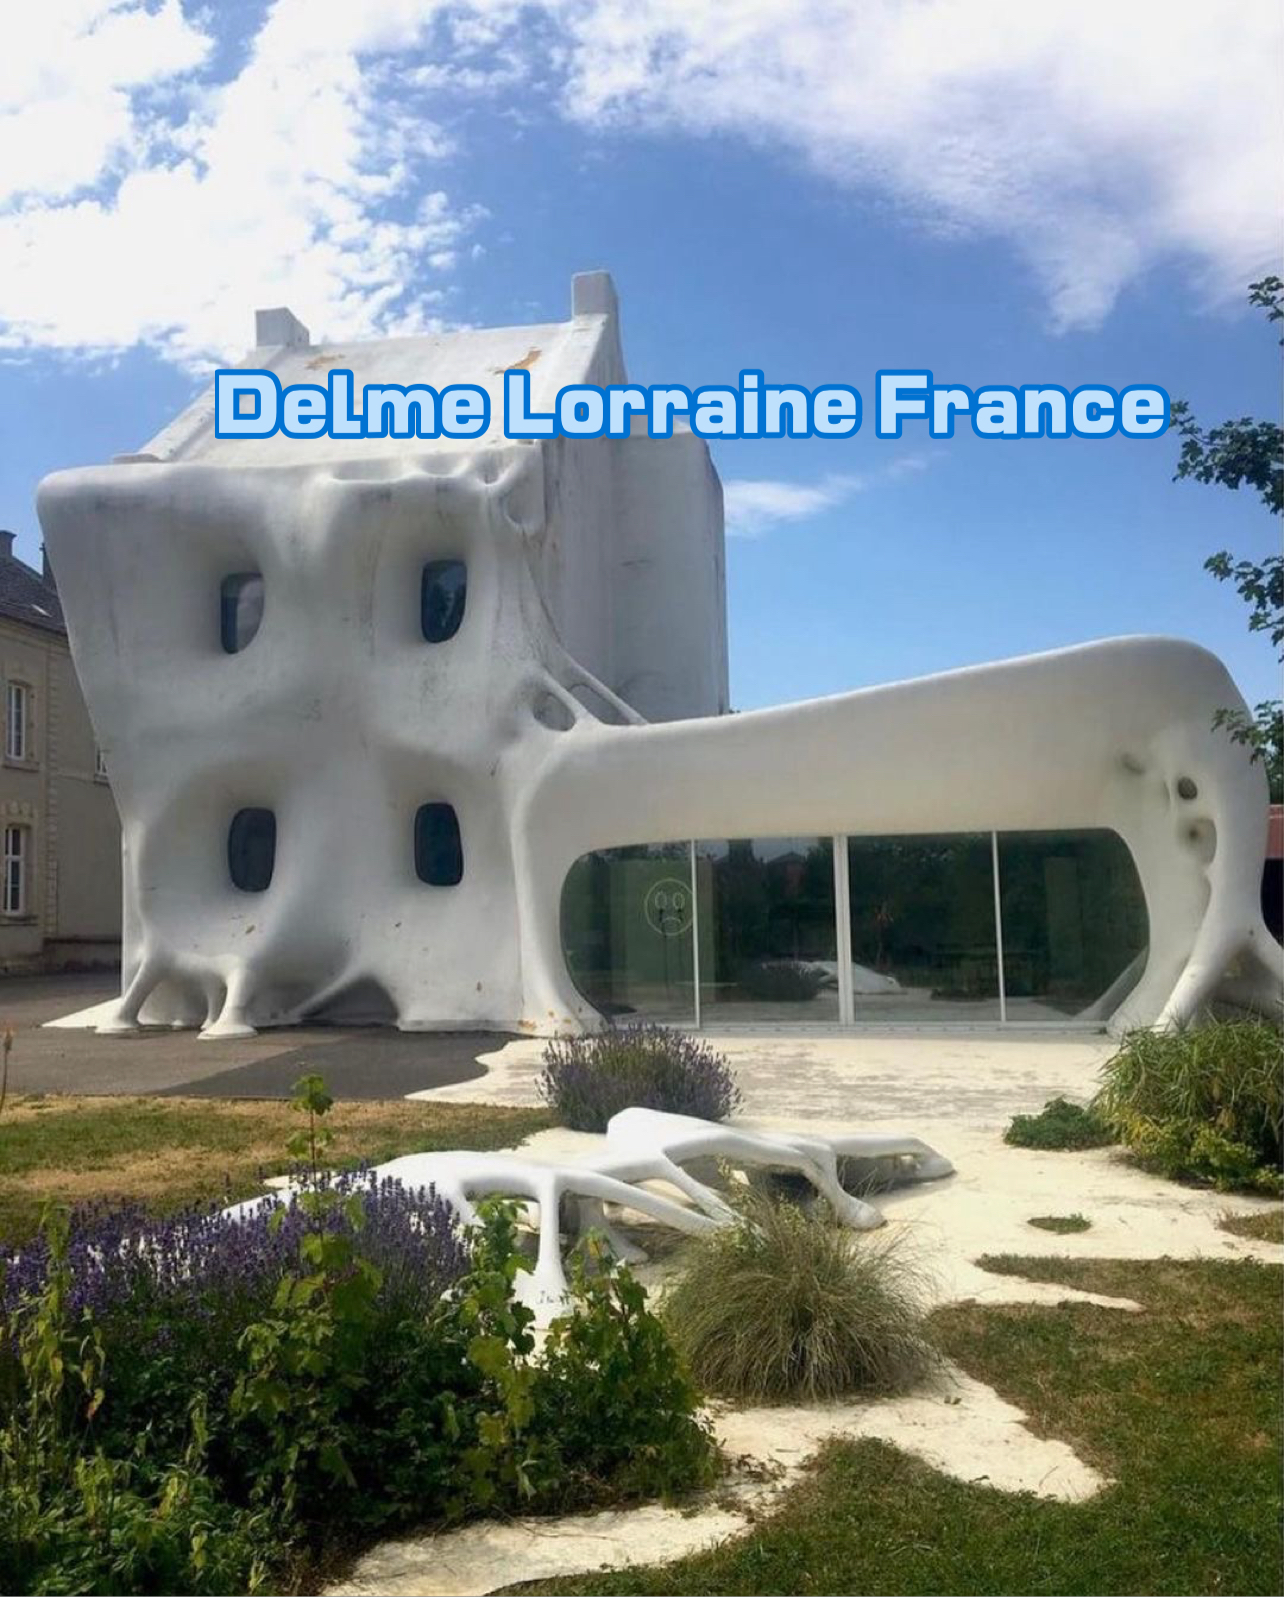 Delme Lorraine France